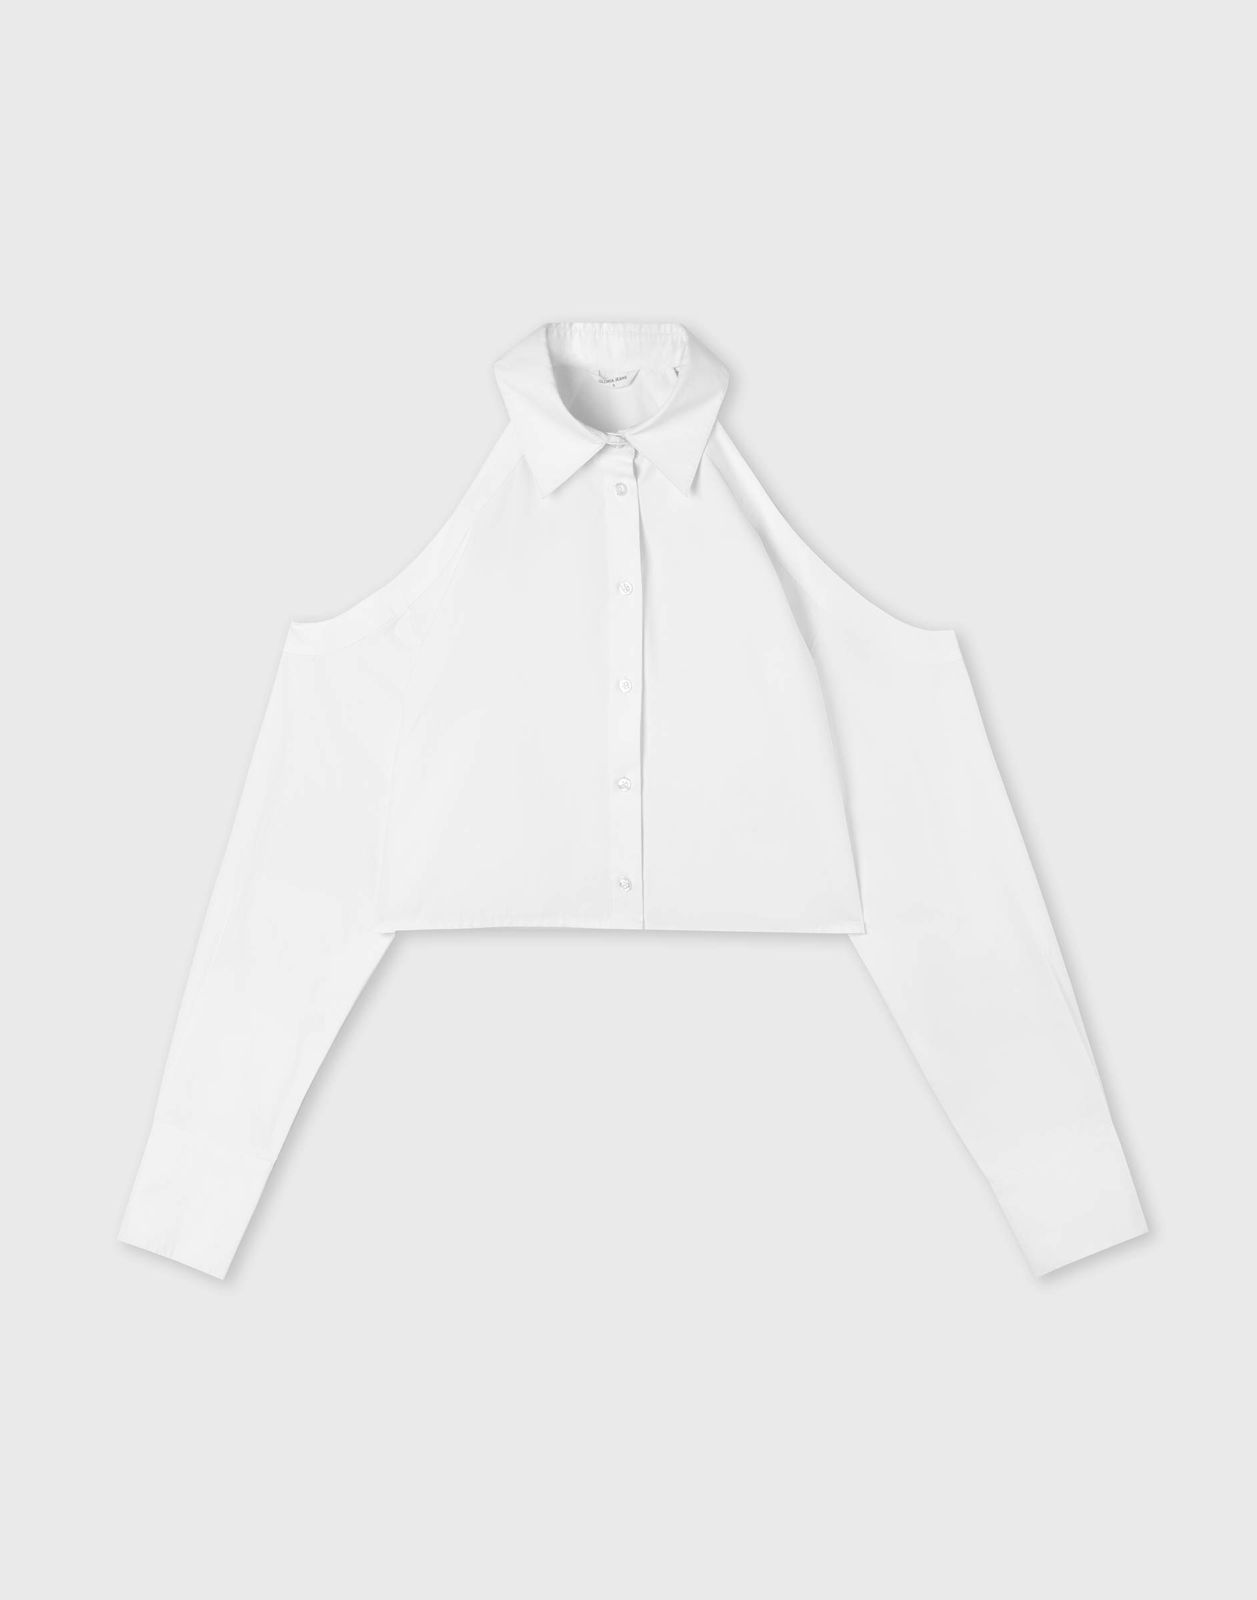 Рубашка женская Gloria Jeans GWT003865 белый XS/164